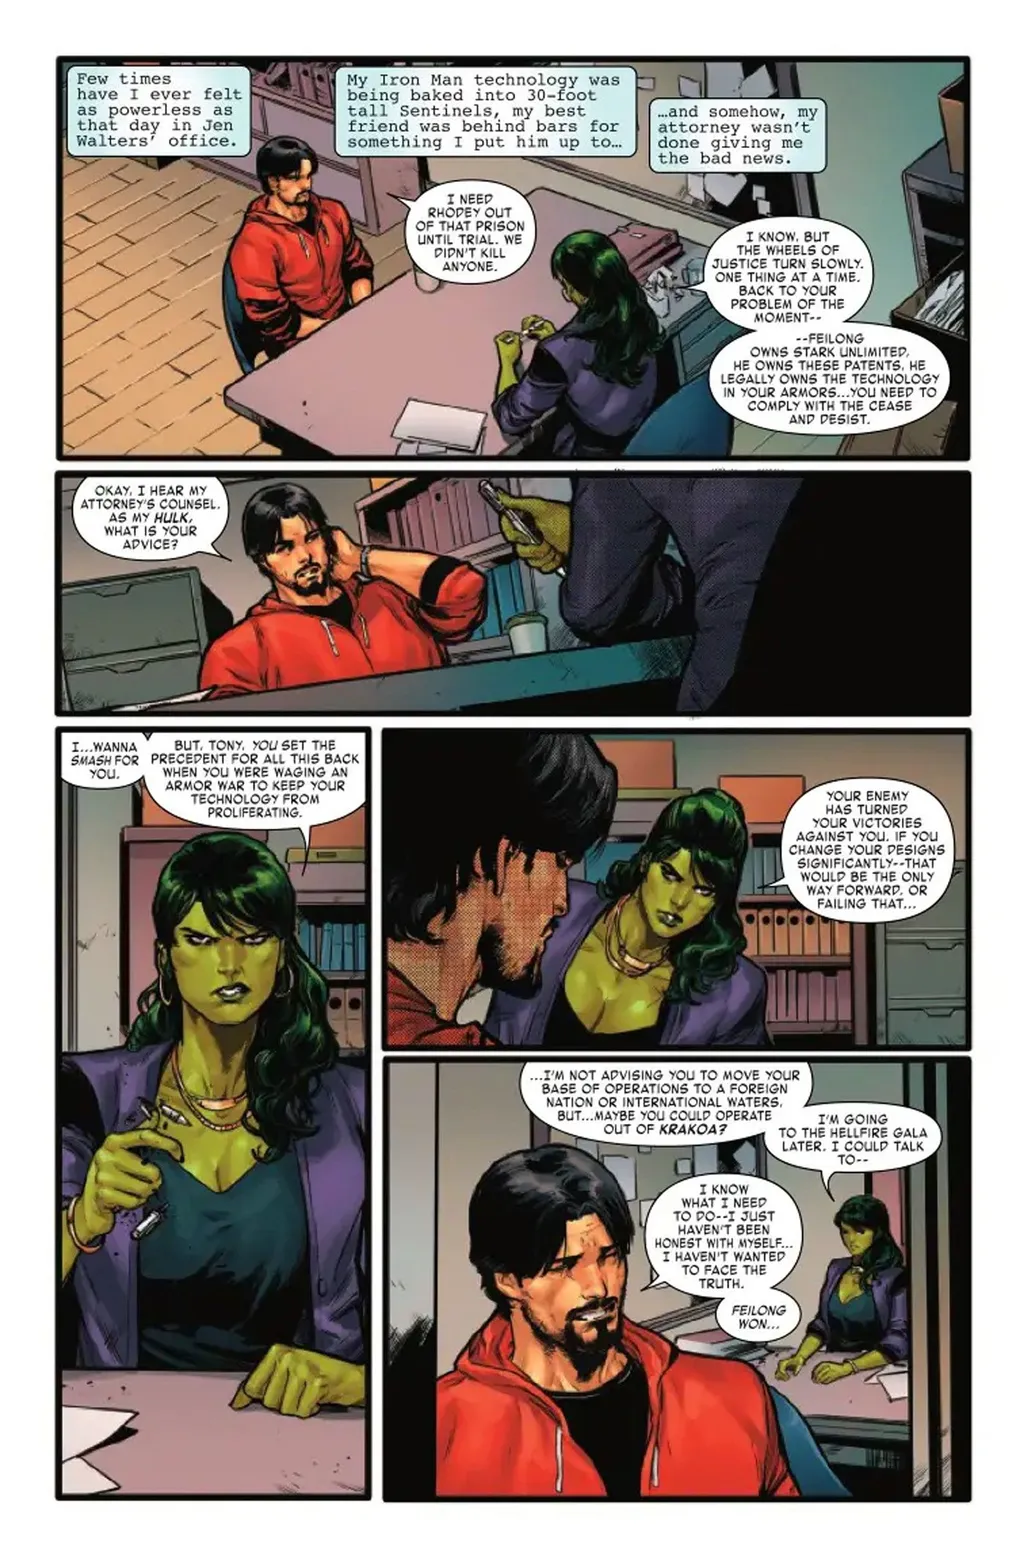 Mulher-Hulk confirma que o Homem de Ferro não pode mais usar legalmente suas antigas armaduras (Imagem: Reprodução/Marvel Comics)